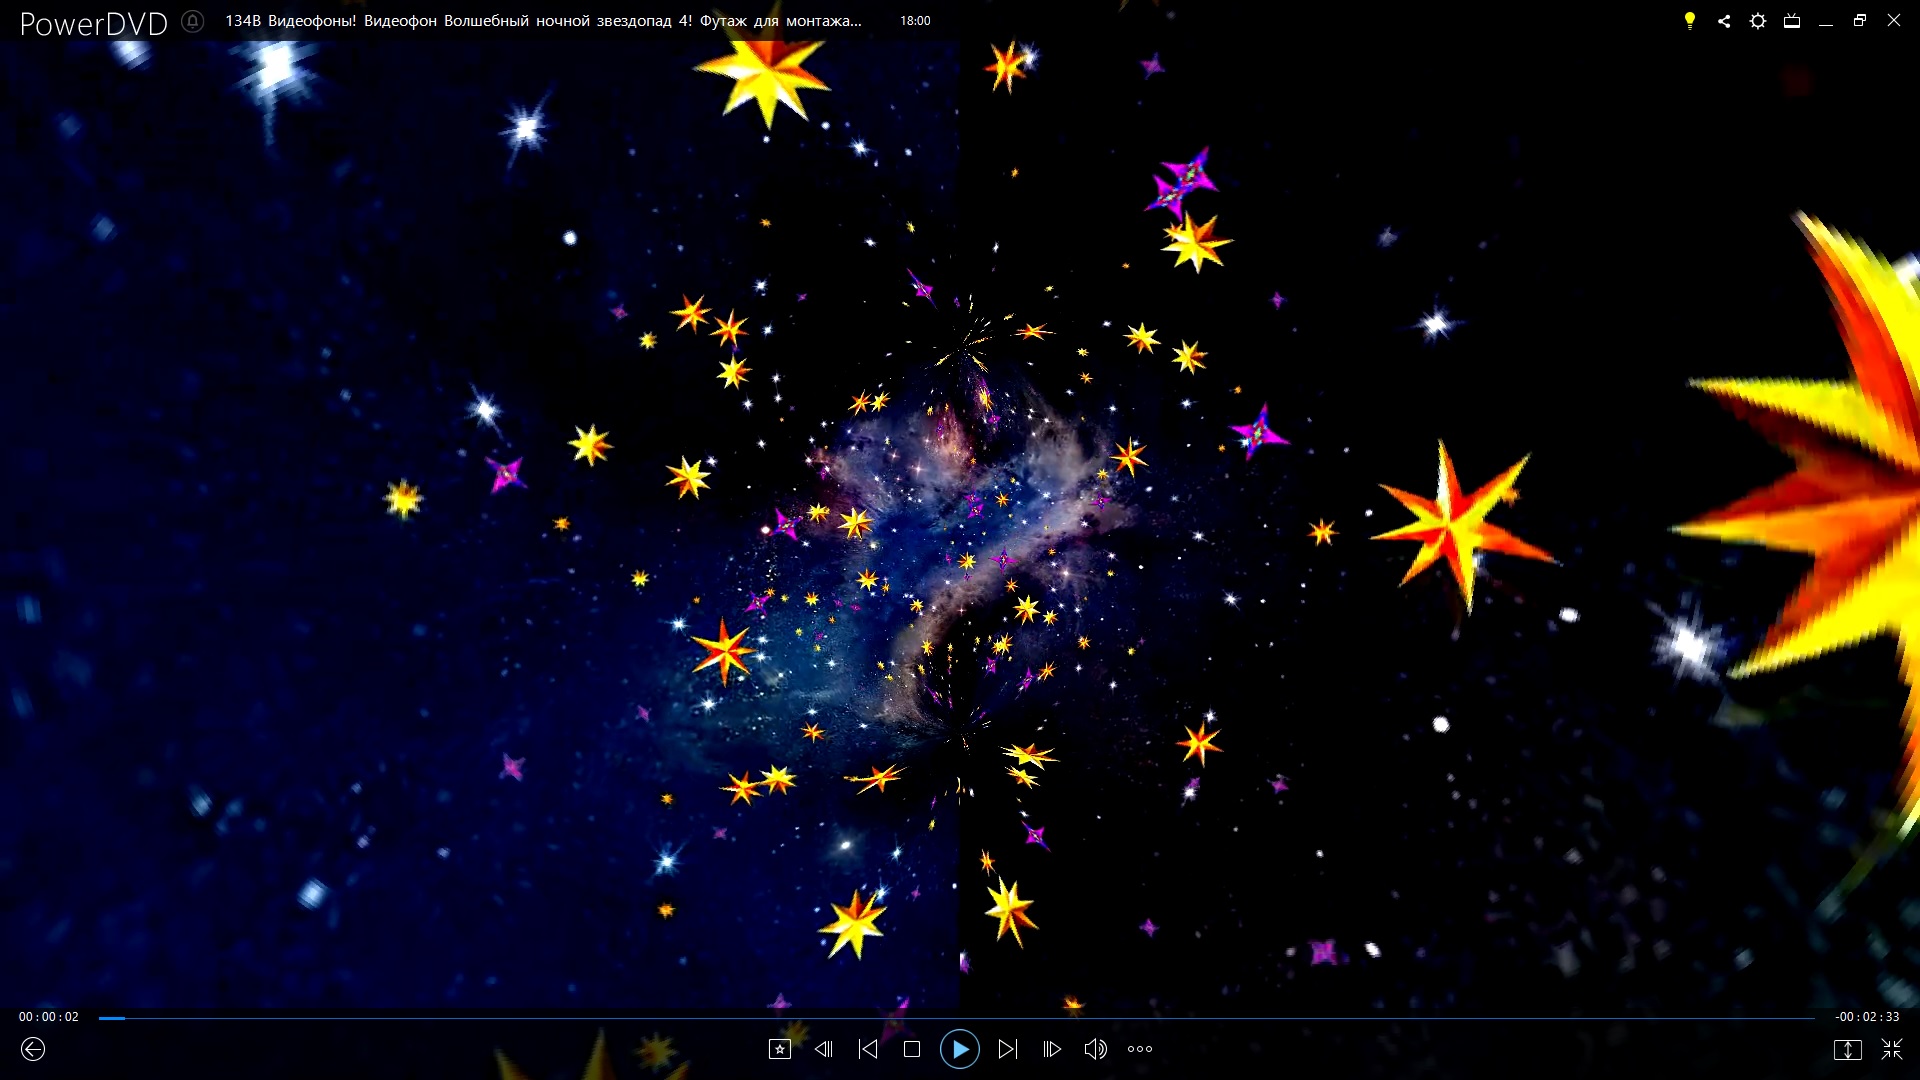 Футажи! Футаж Волшебный ночной звездопад 4 для монтажа видео  от Киностудии Мудрого Кота Тимофея!